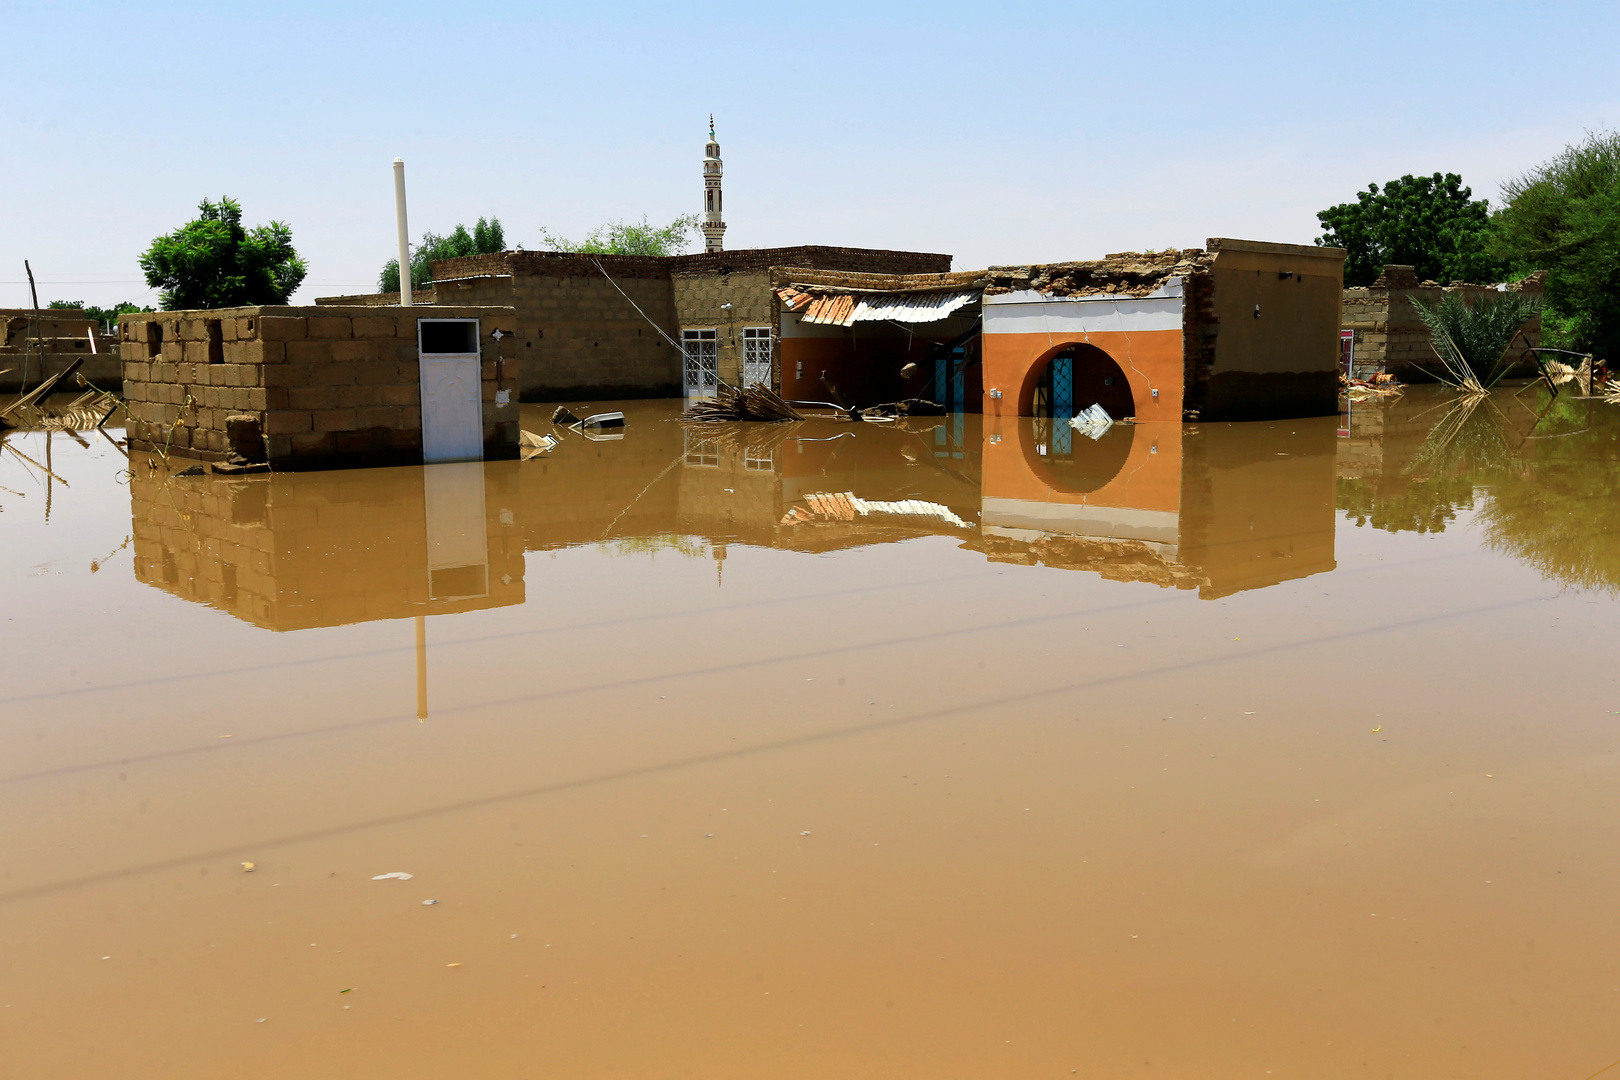 السودان يعلن عن انهيار مفاجئ لأحد السدود وتدمير أكثر من 600 منزل